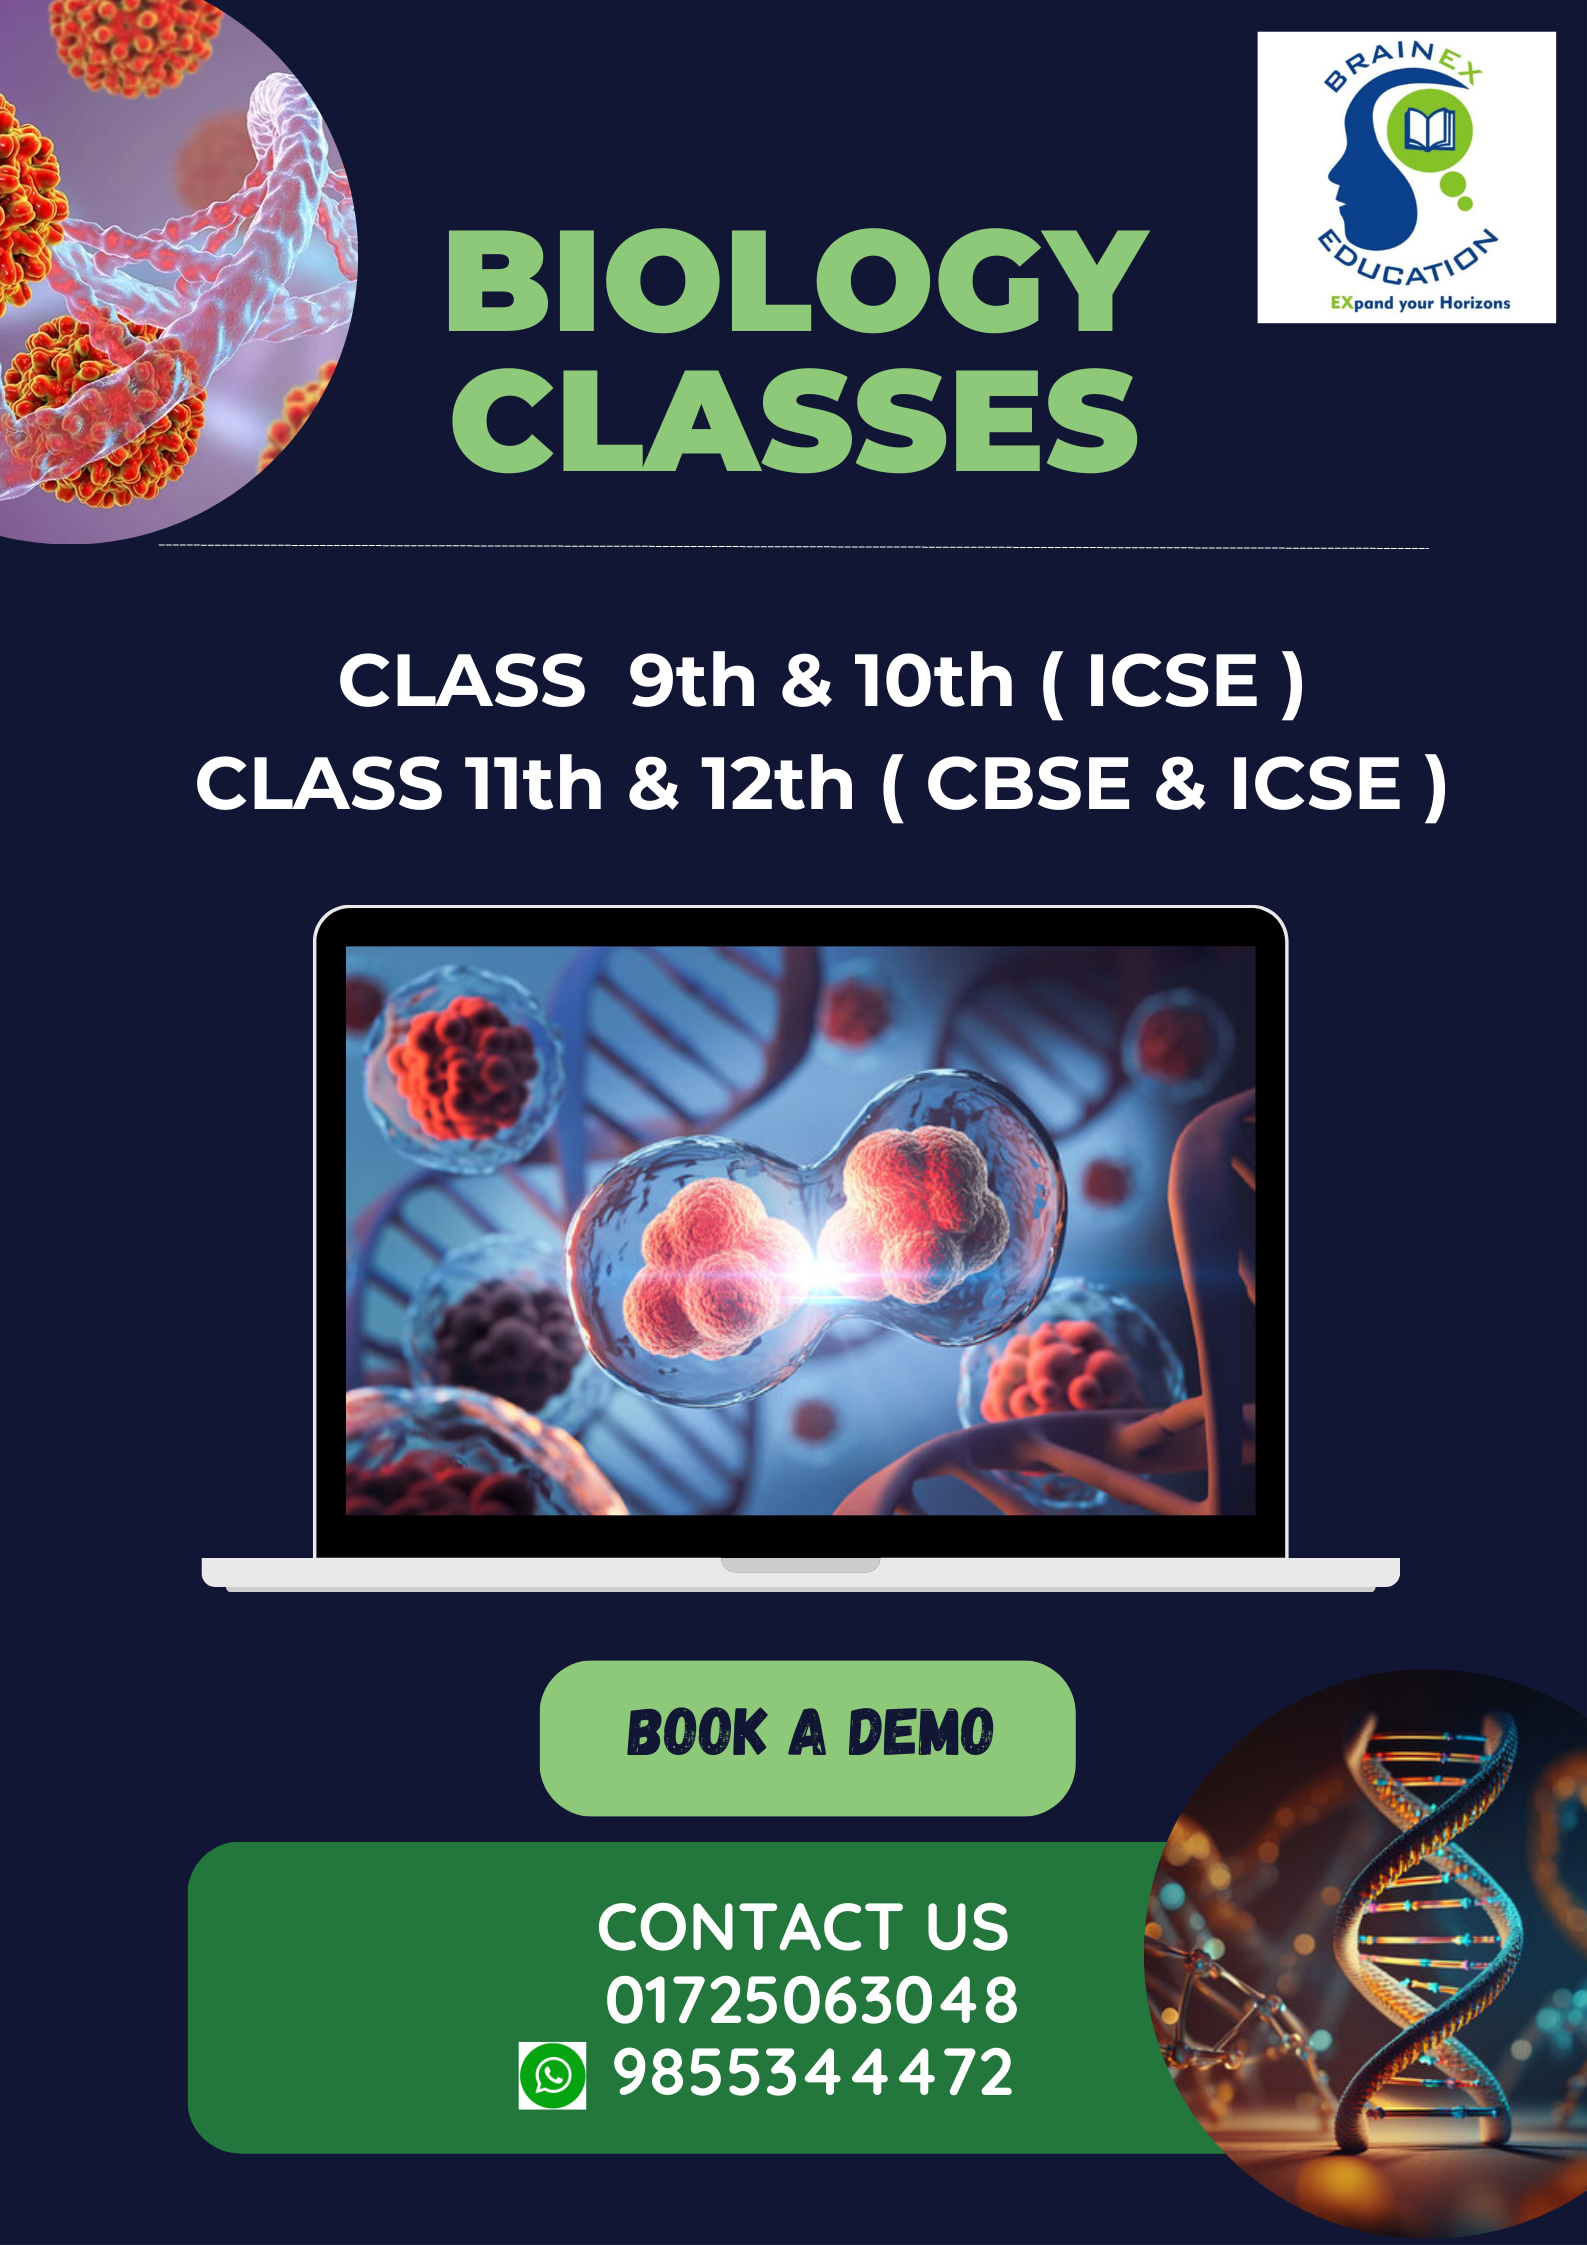 BIOLOGY CLASSES